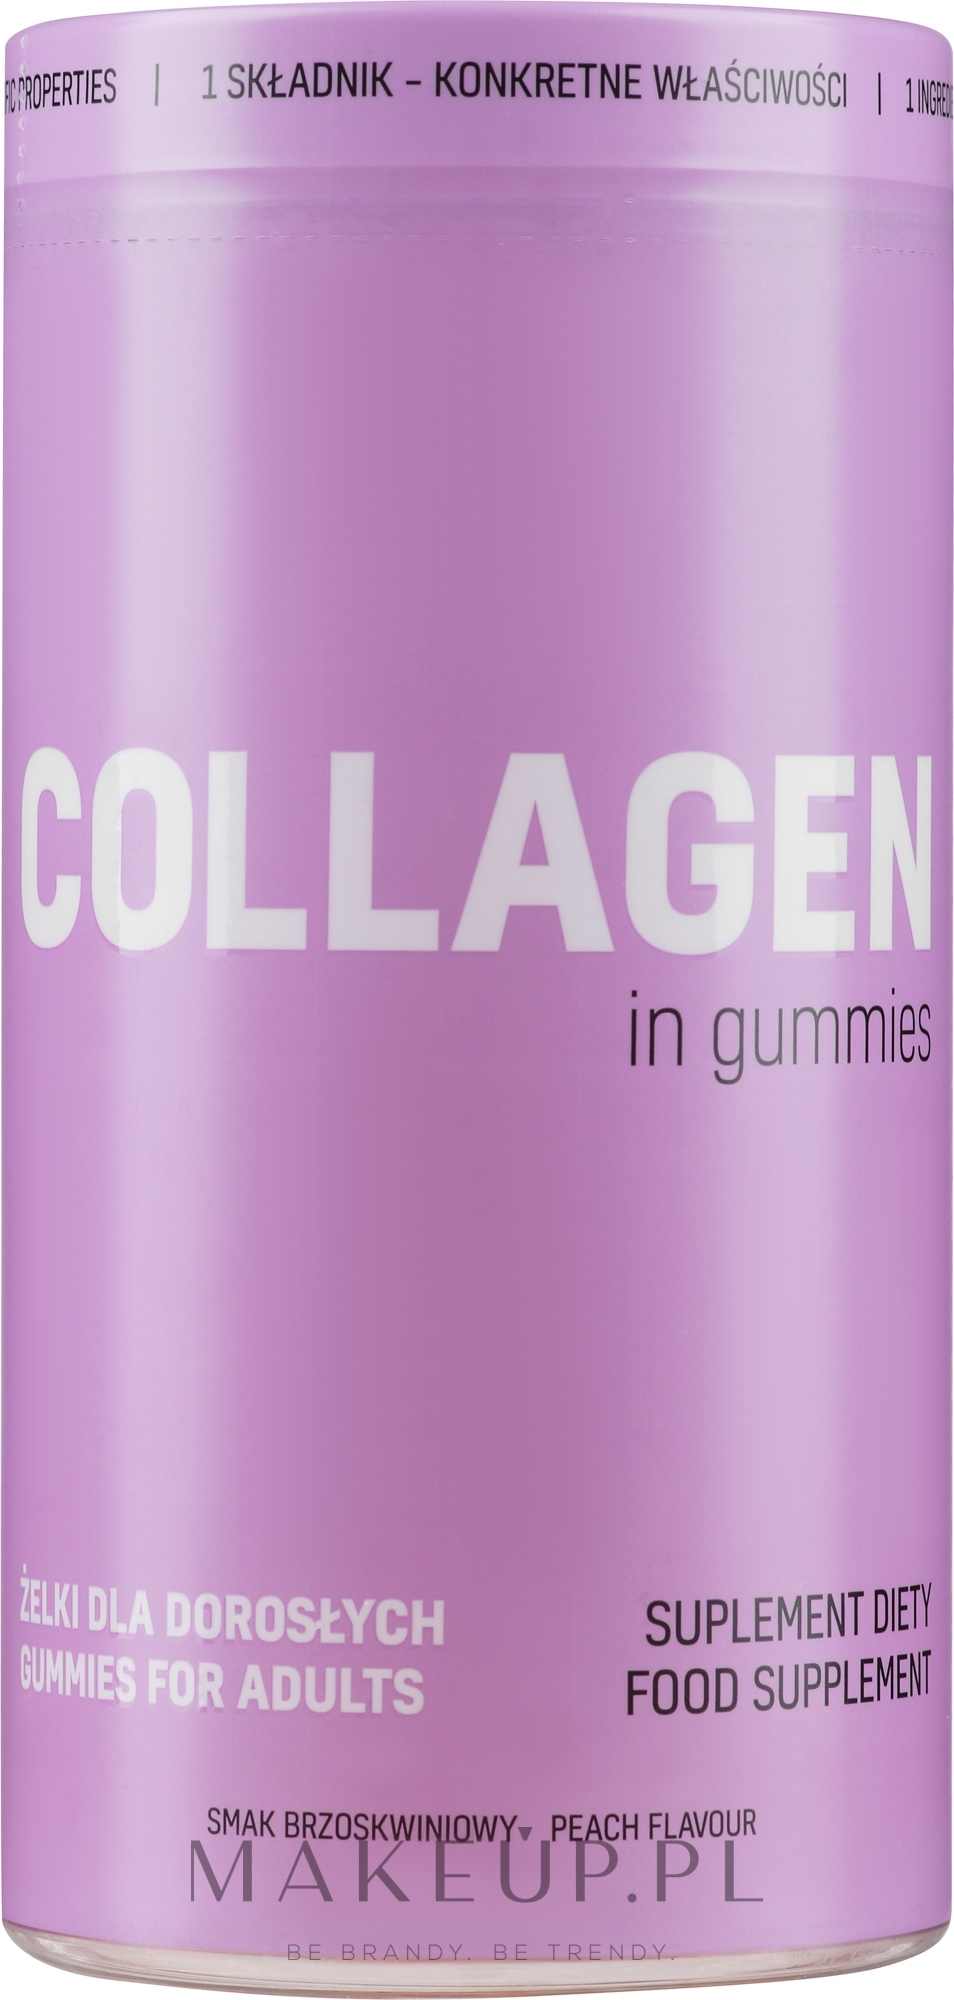 Kolagen w żelkach o brzoskwiniowym smaku - Noble Collagen In Gummies — Zdjęcie 300 g